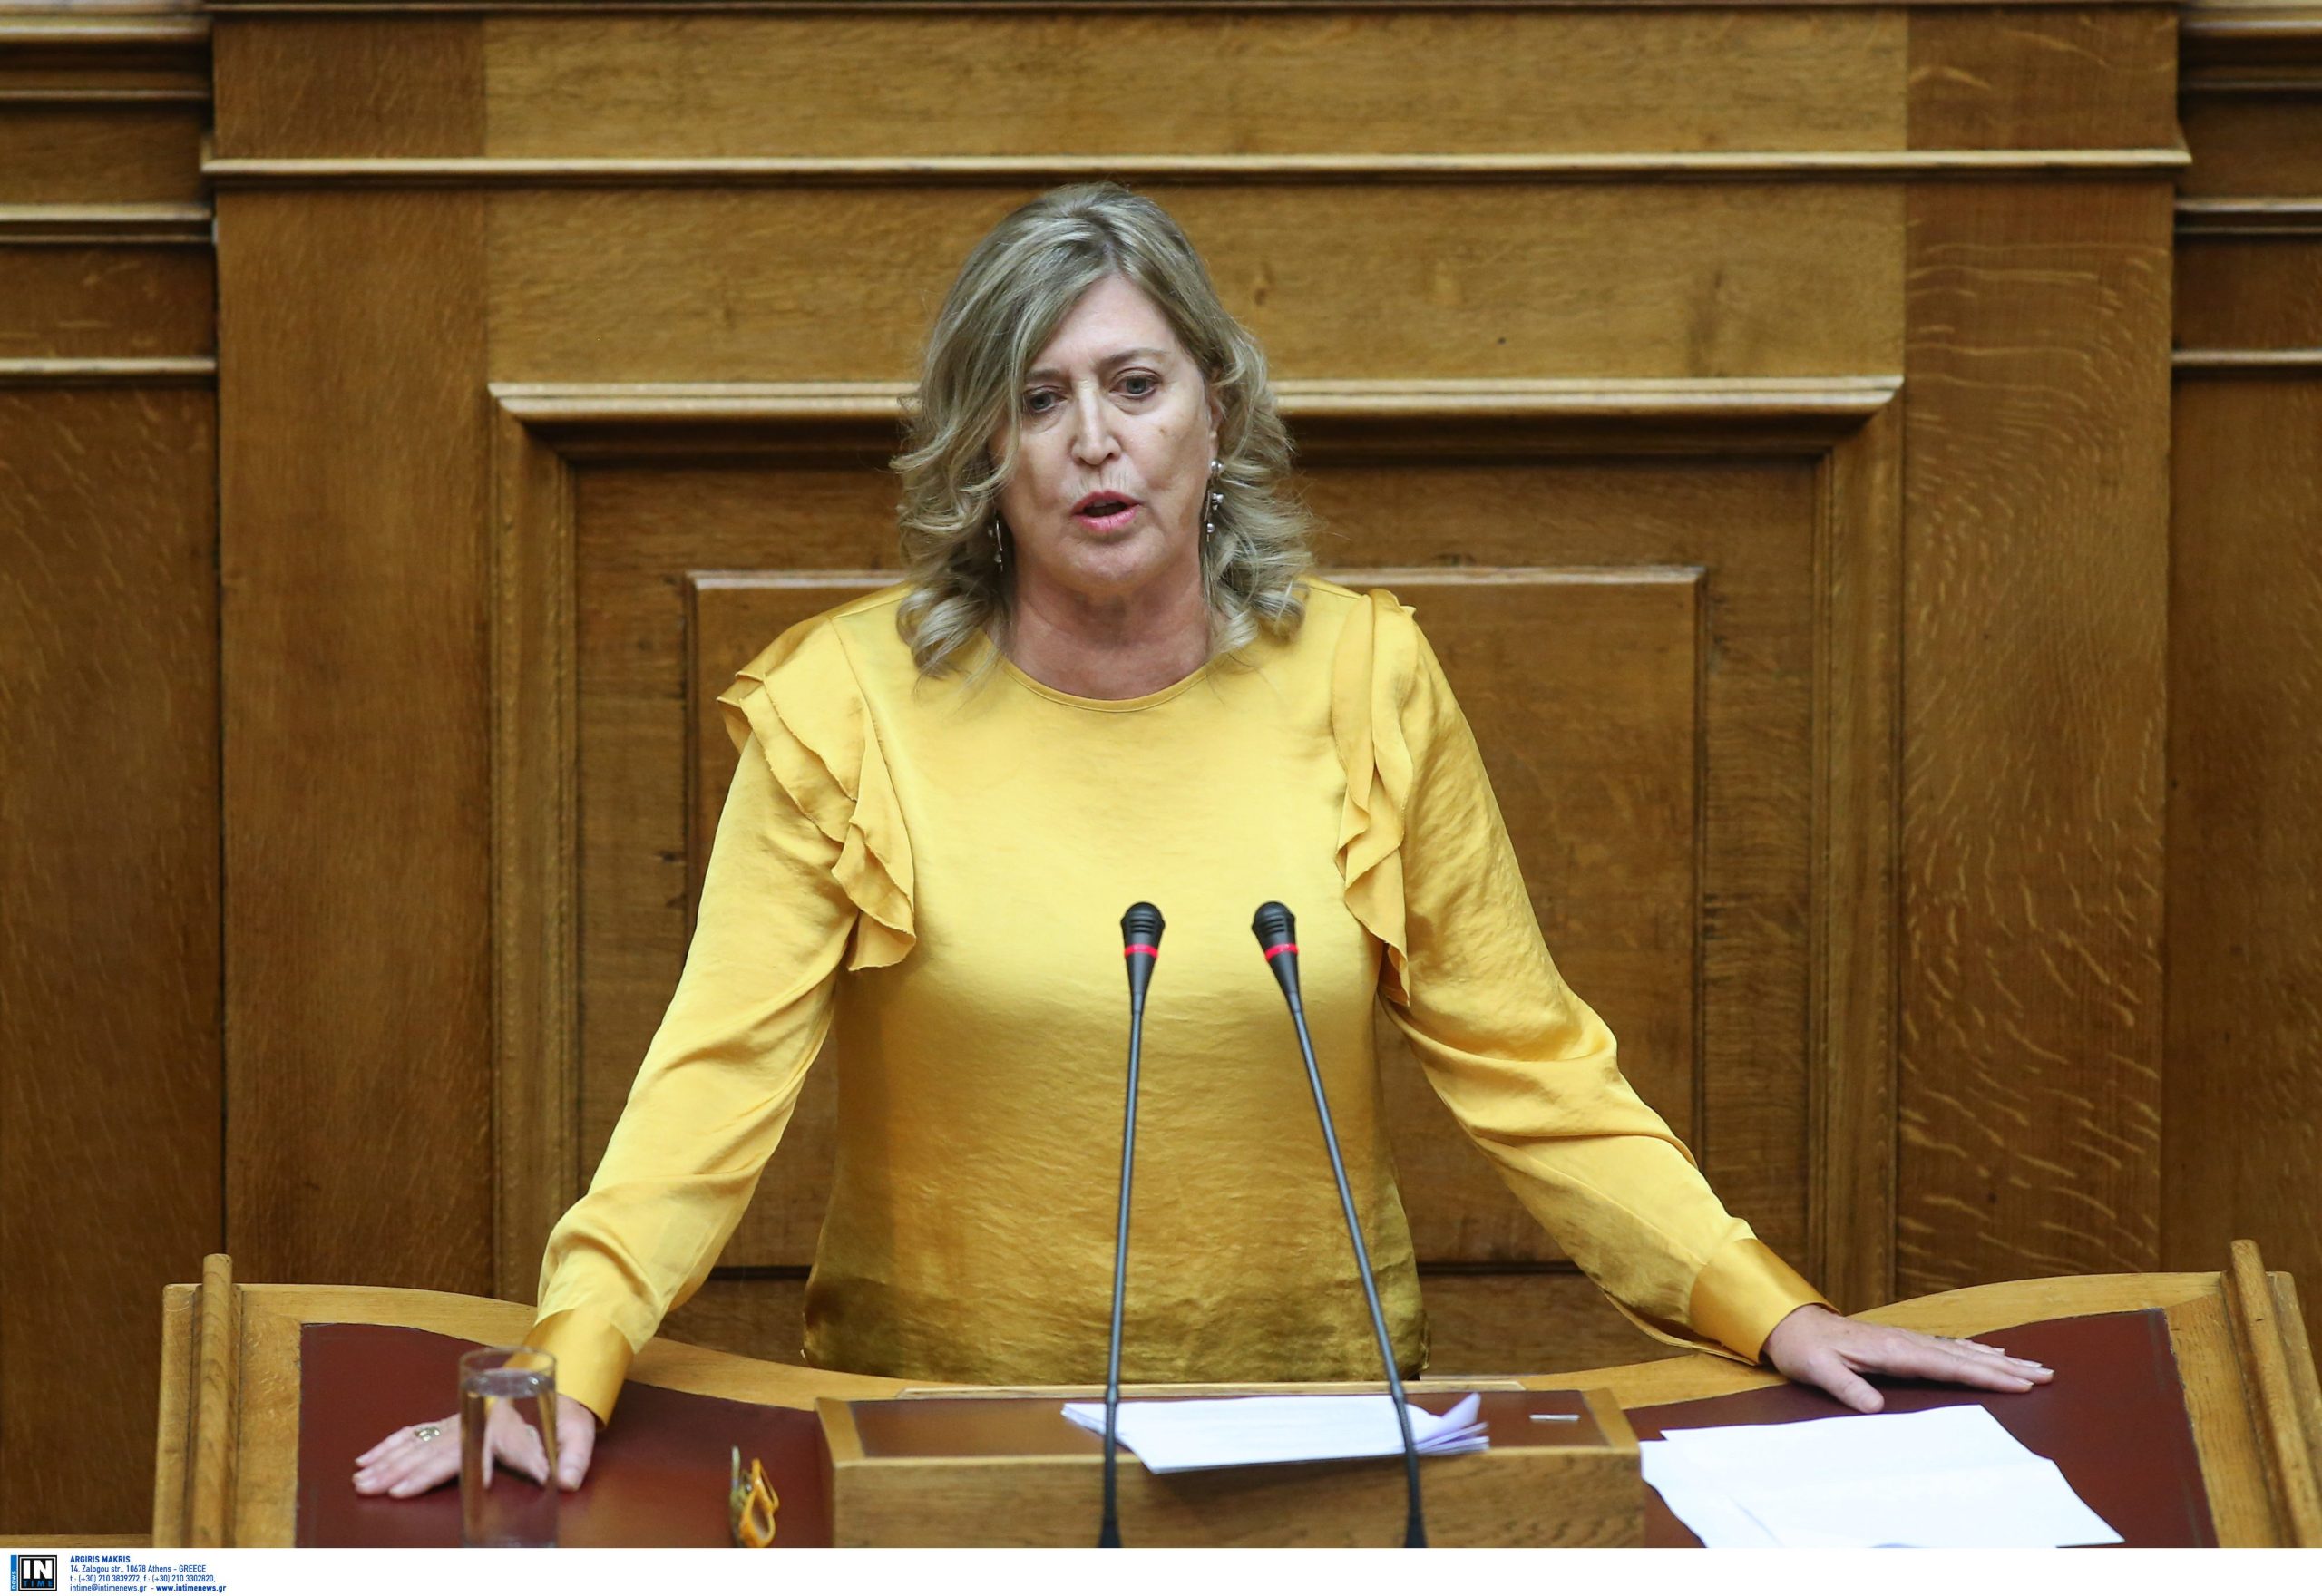 Καρακώστα για Καμμένο: «Γνωστή η στάση του για Σκόπια αλλά θα ψηφίσουν άλλοι στη Βουλή τη Συμφωνία των Πρεσπών»